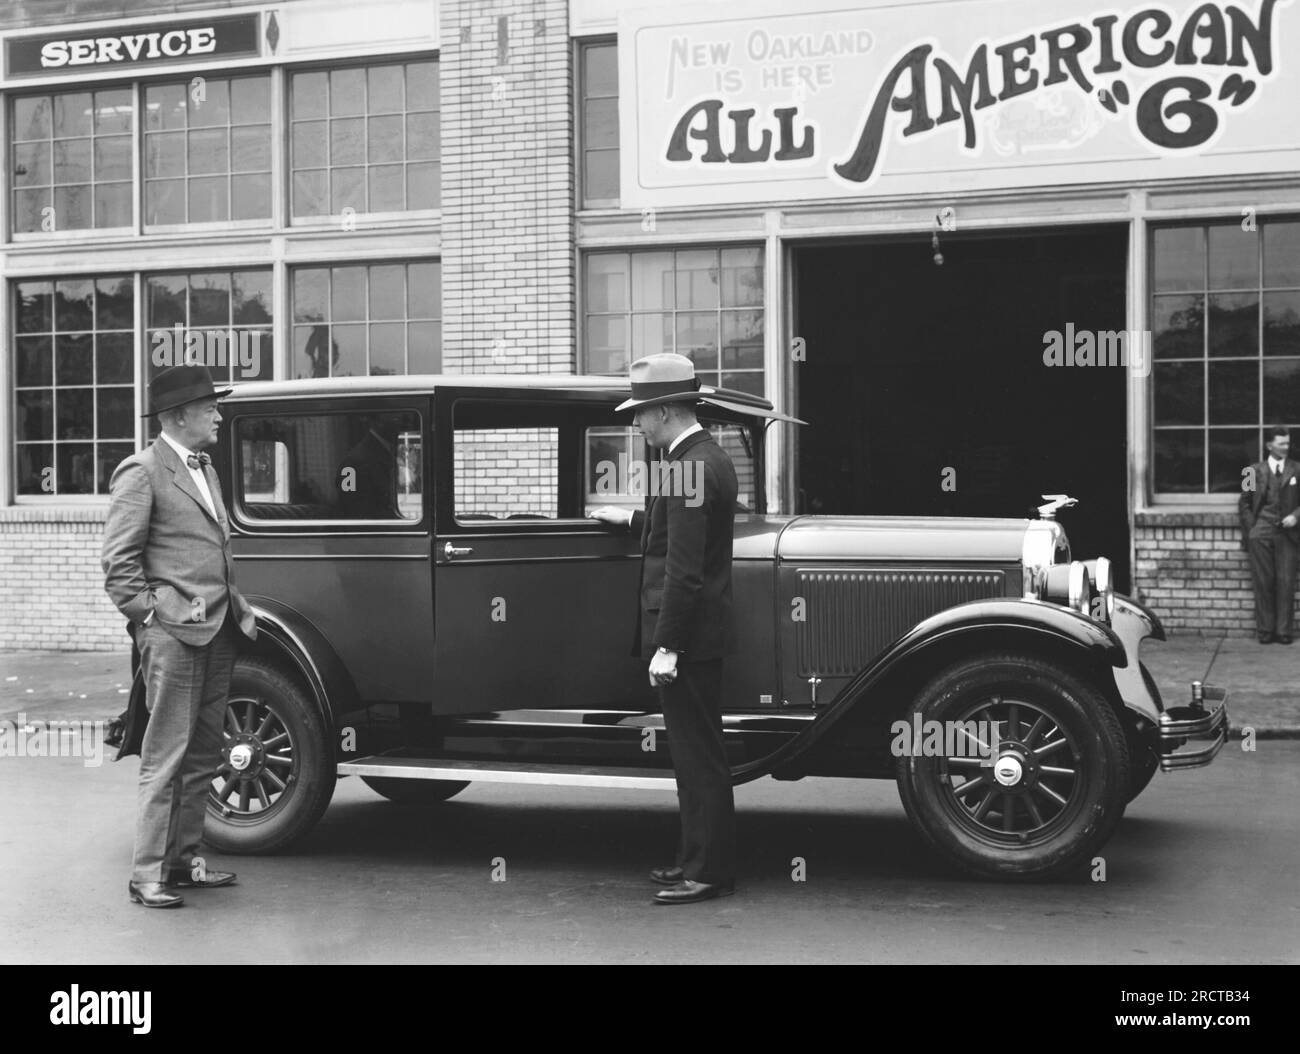 San Francisco, Kalifornien: ca. 1927 zwei Männer stehen vor dem Autohaus mit dem neuen Oakland-Automobil. Stockfoto